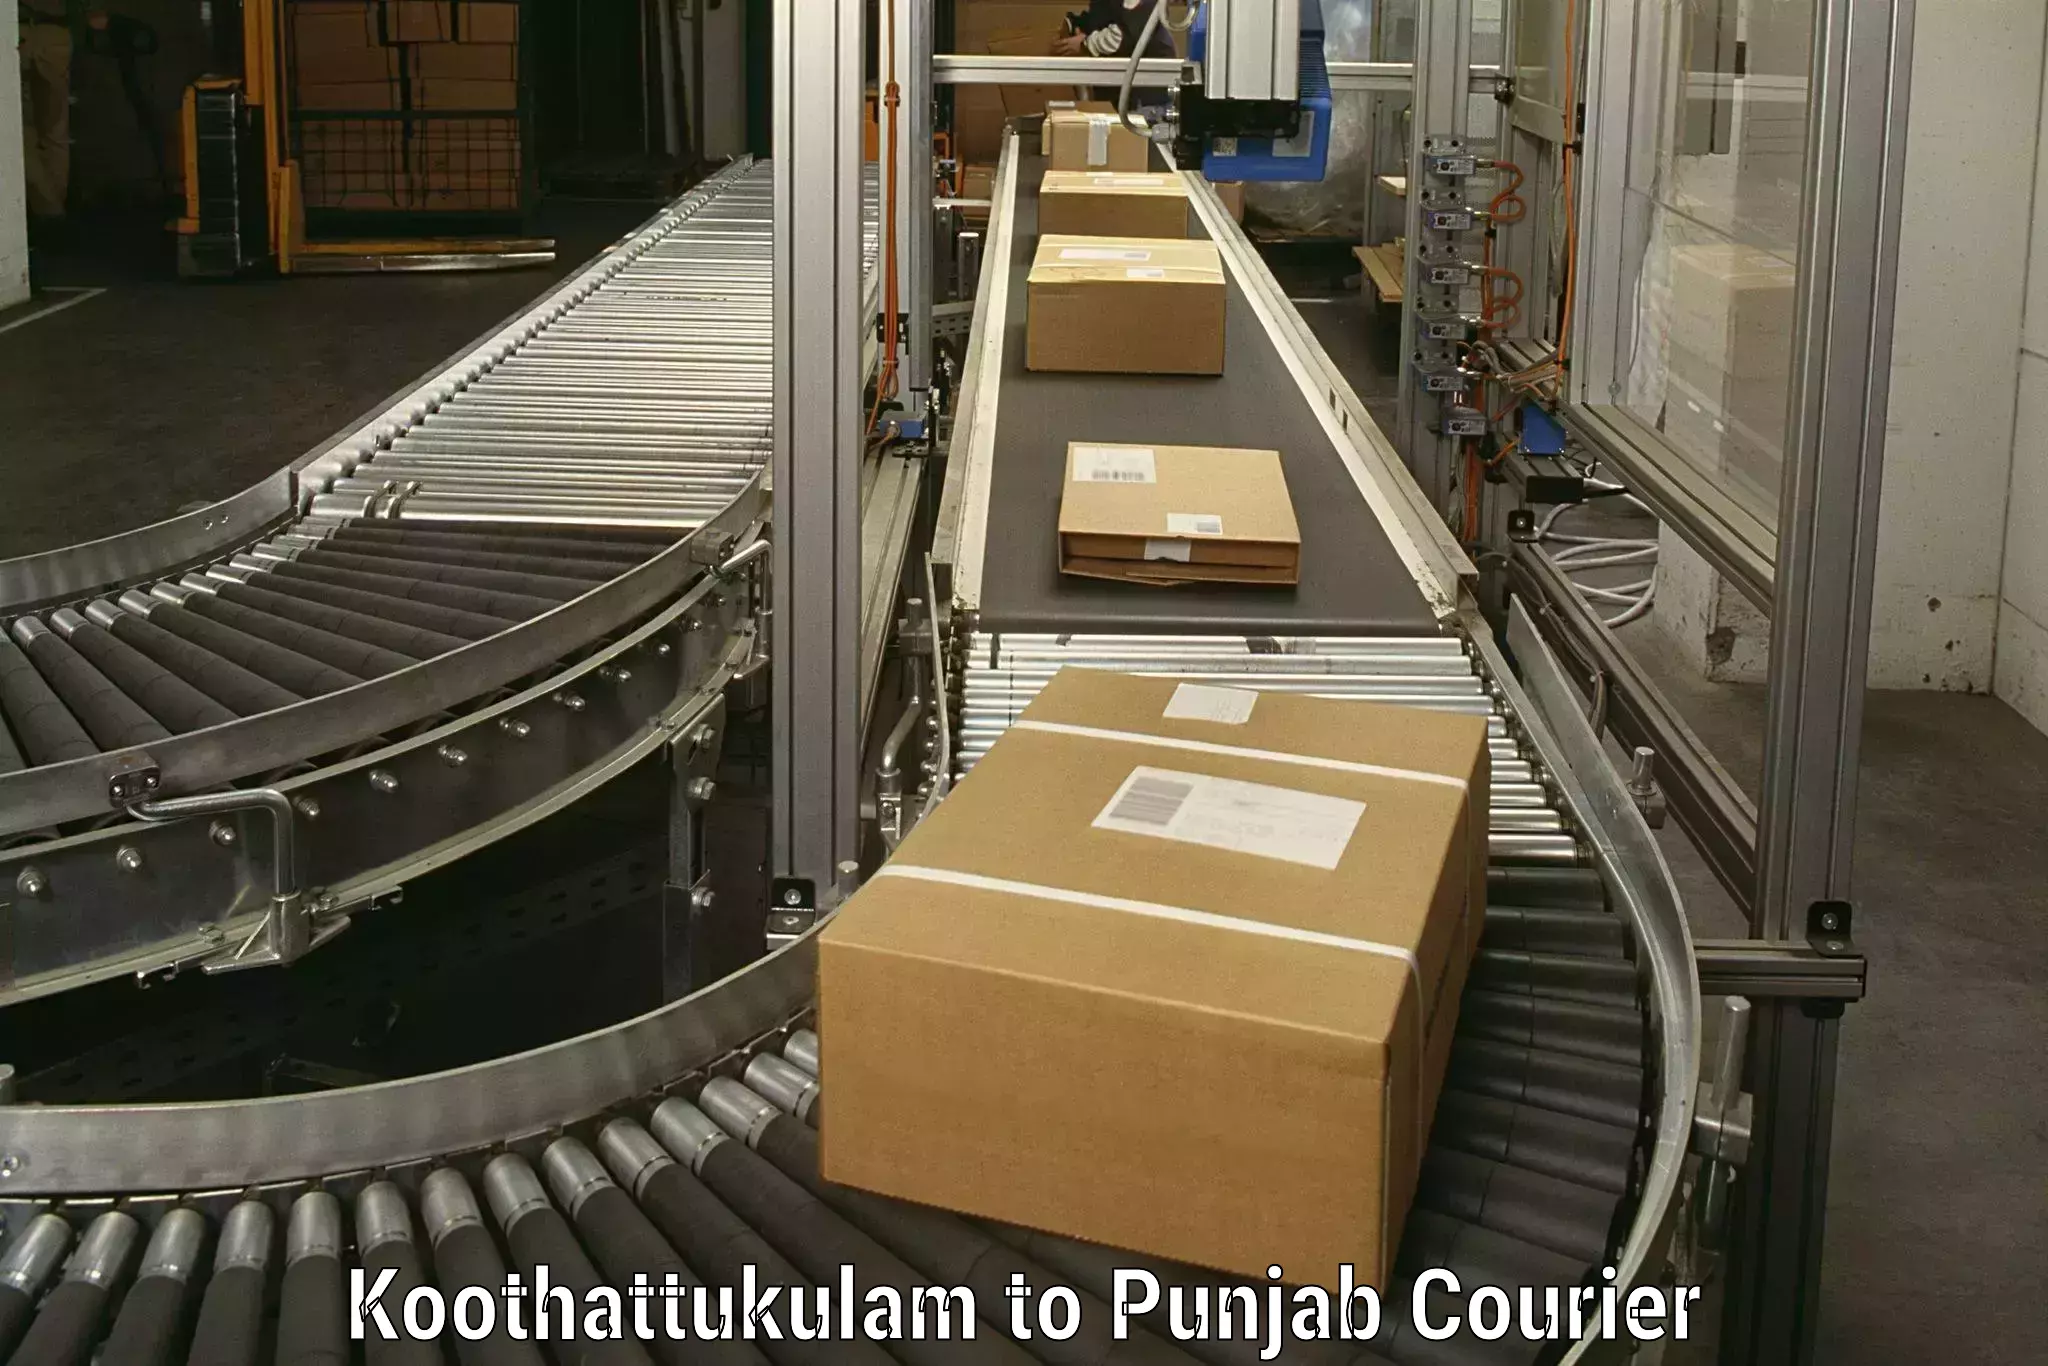 Furniture delivery service Koothattukulam to Zira